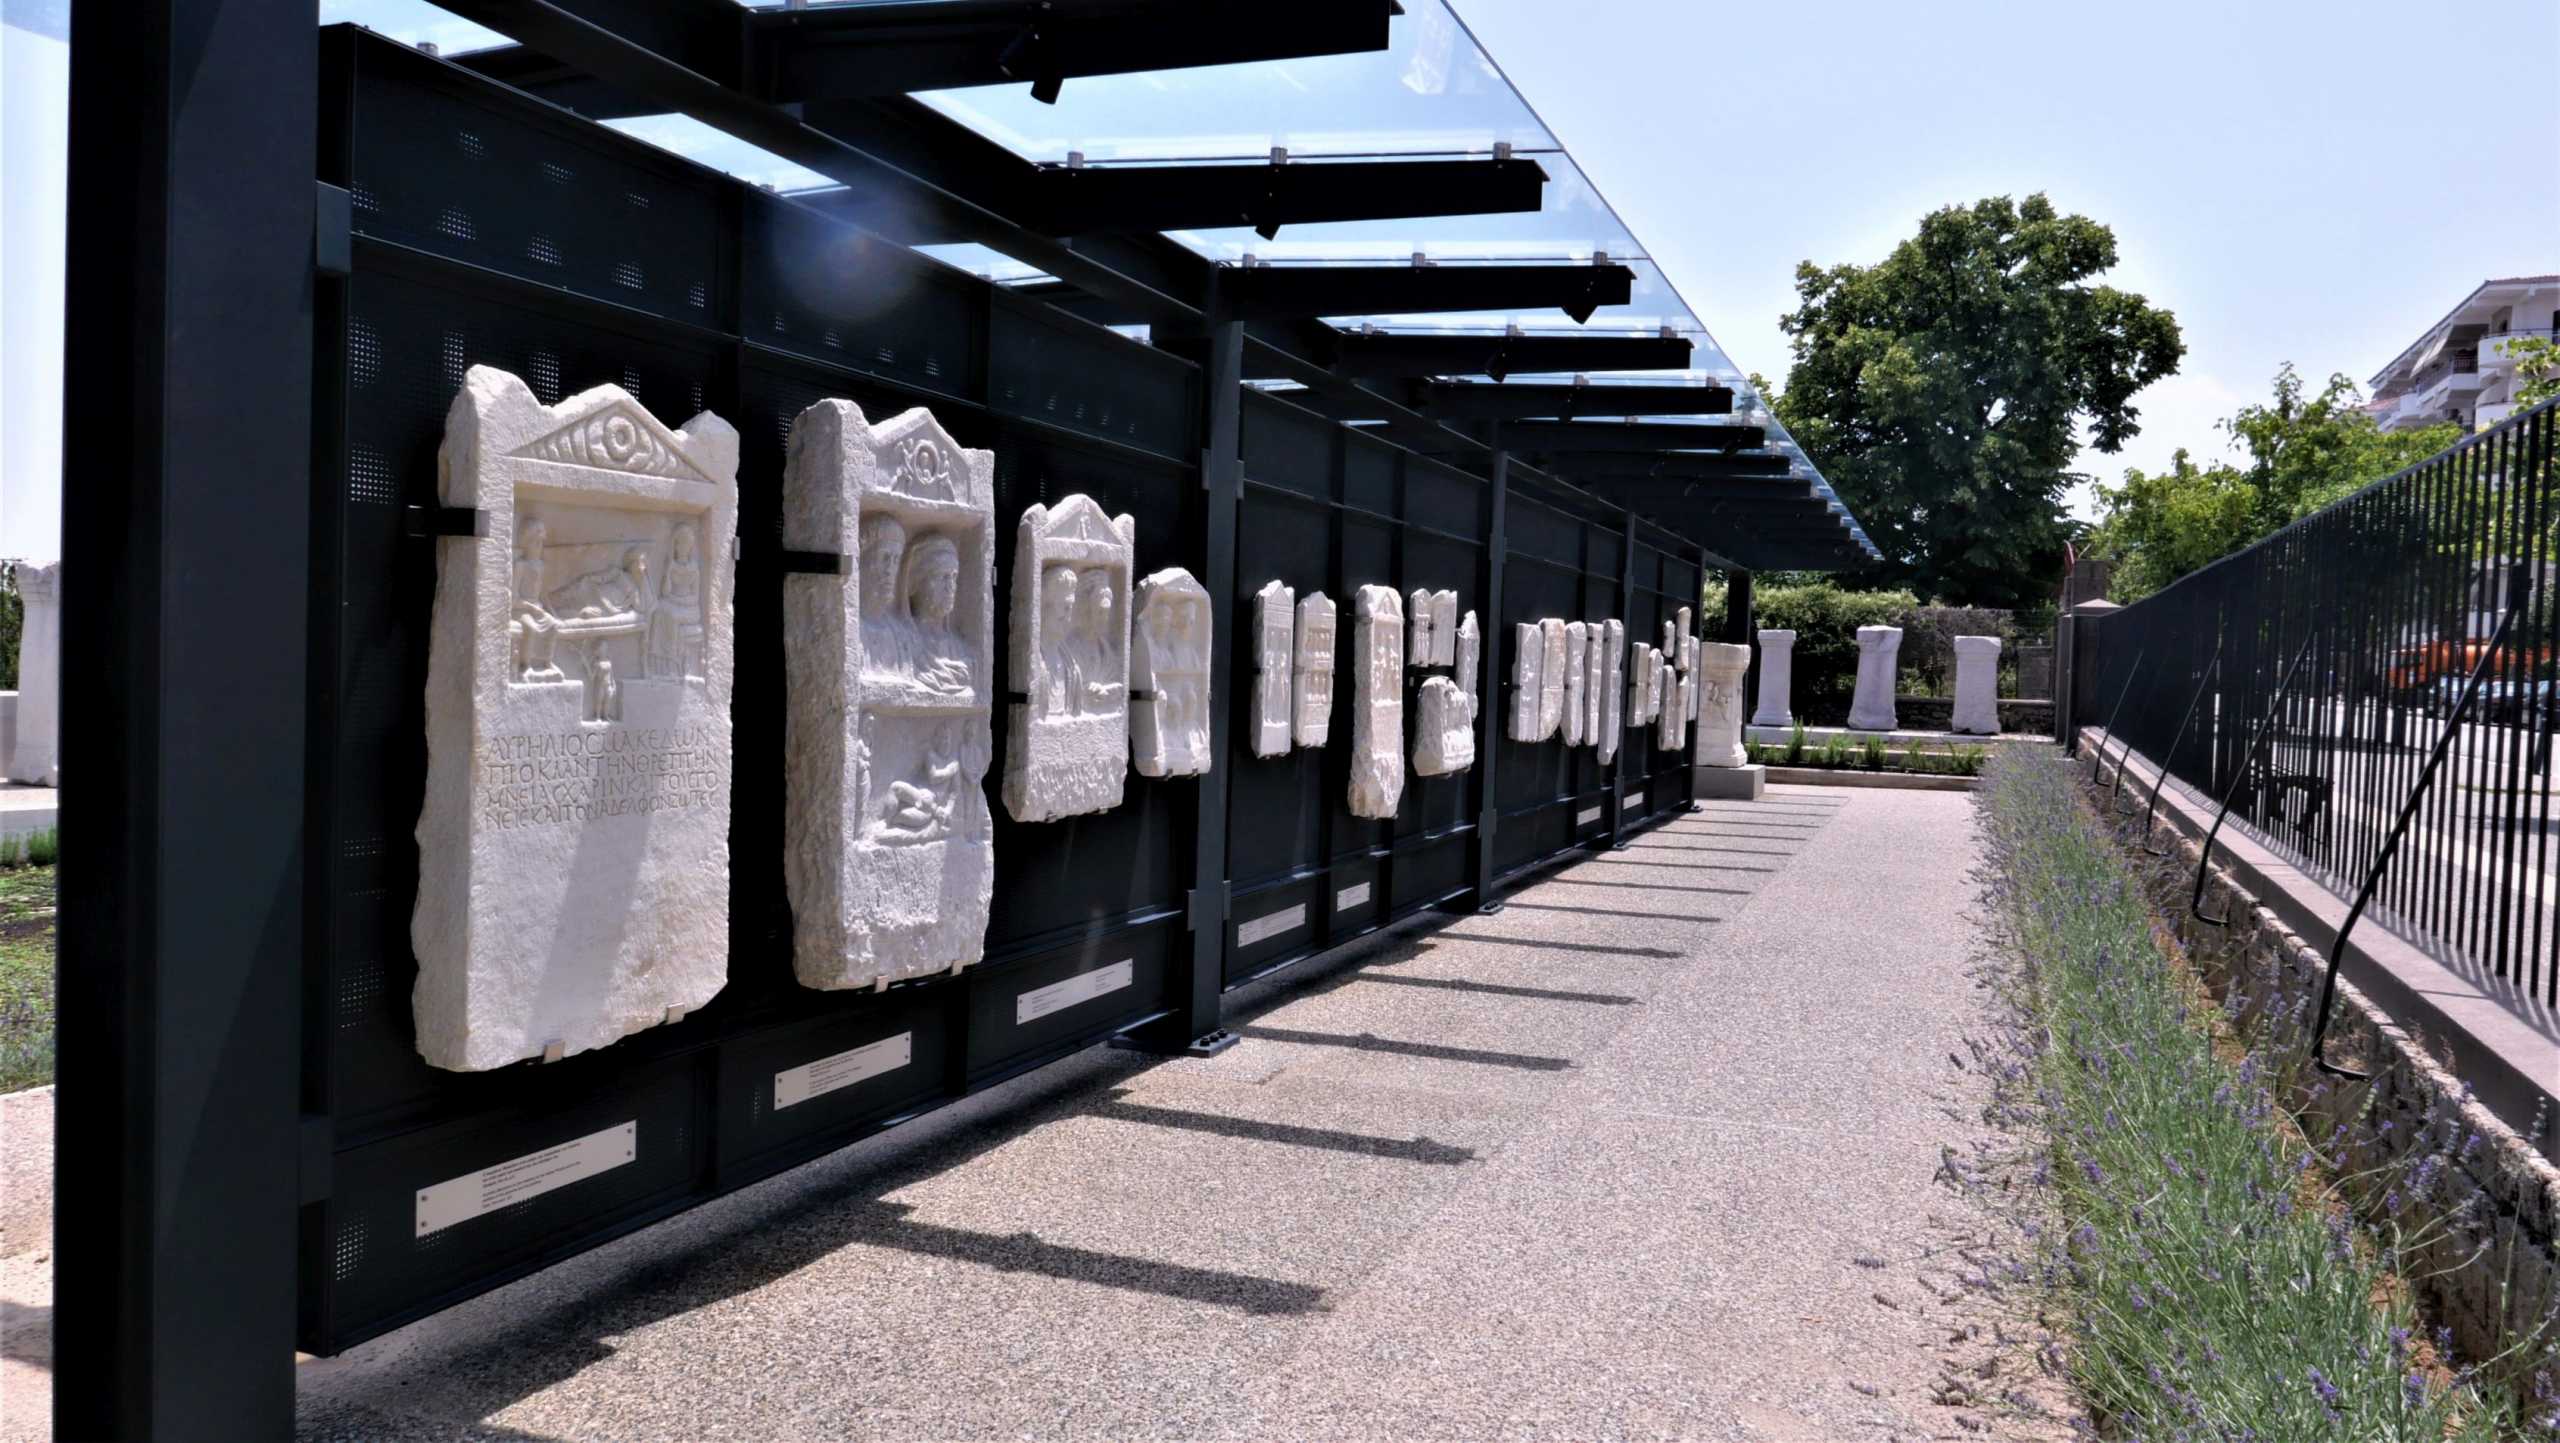 Βεργίνα: Βασιλικοί τάφοι και σπάνια ευρήματα – Μέσα στο αρχαιολογικό πάρκο της Νεκρόπολης των Αιγών